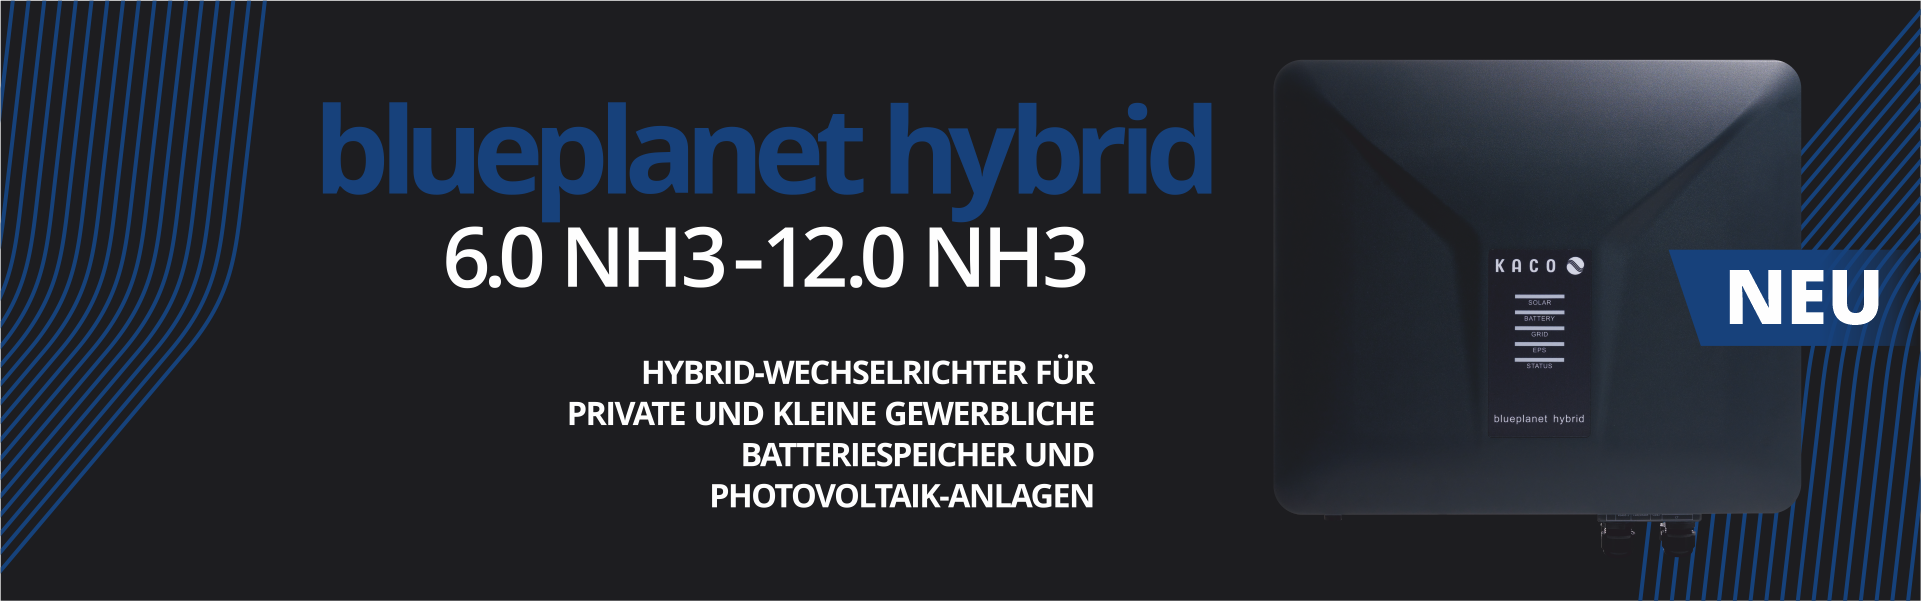 Header blueplanet hybrid 12.0 NH3